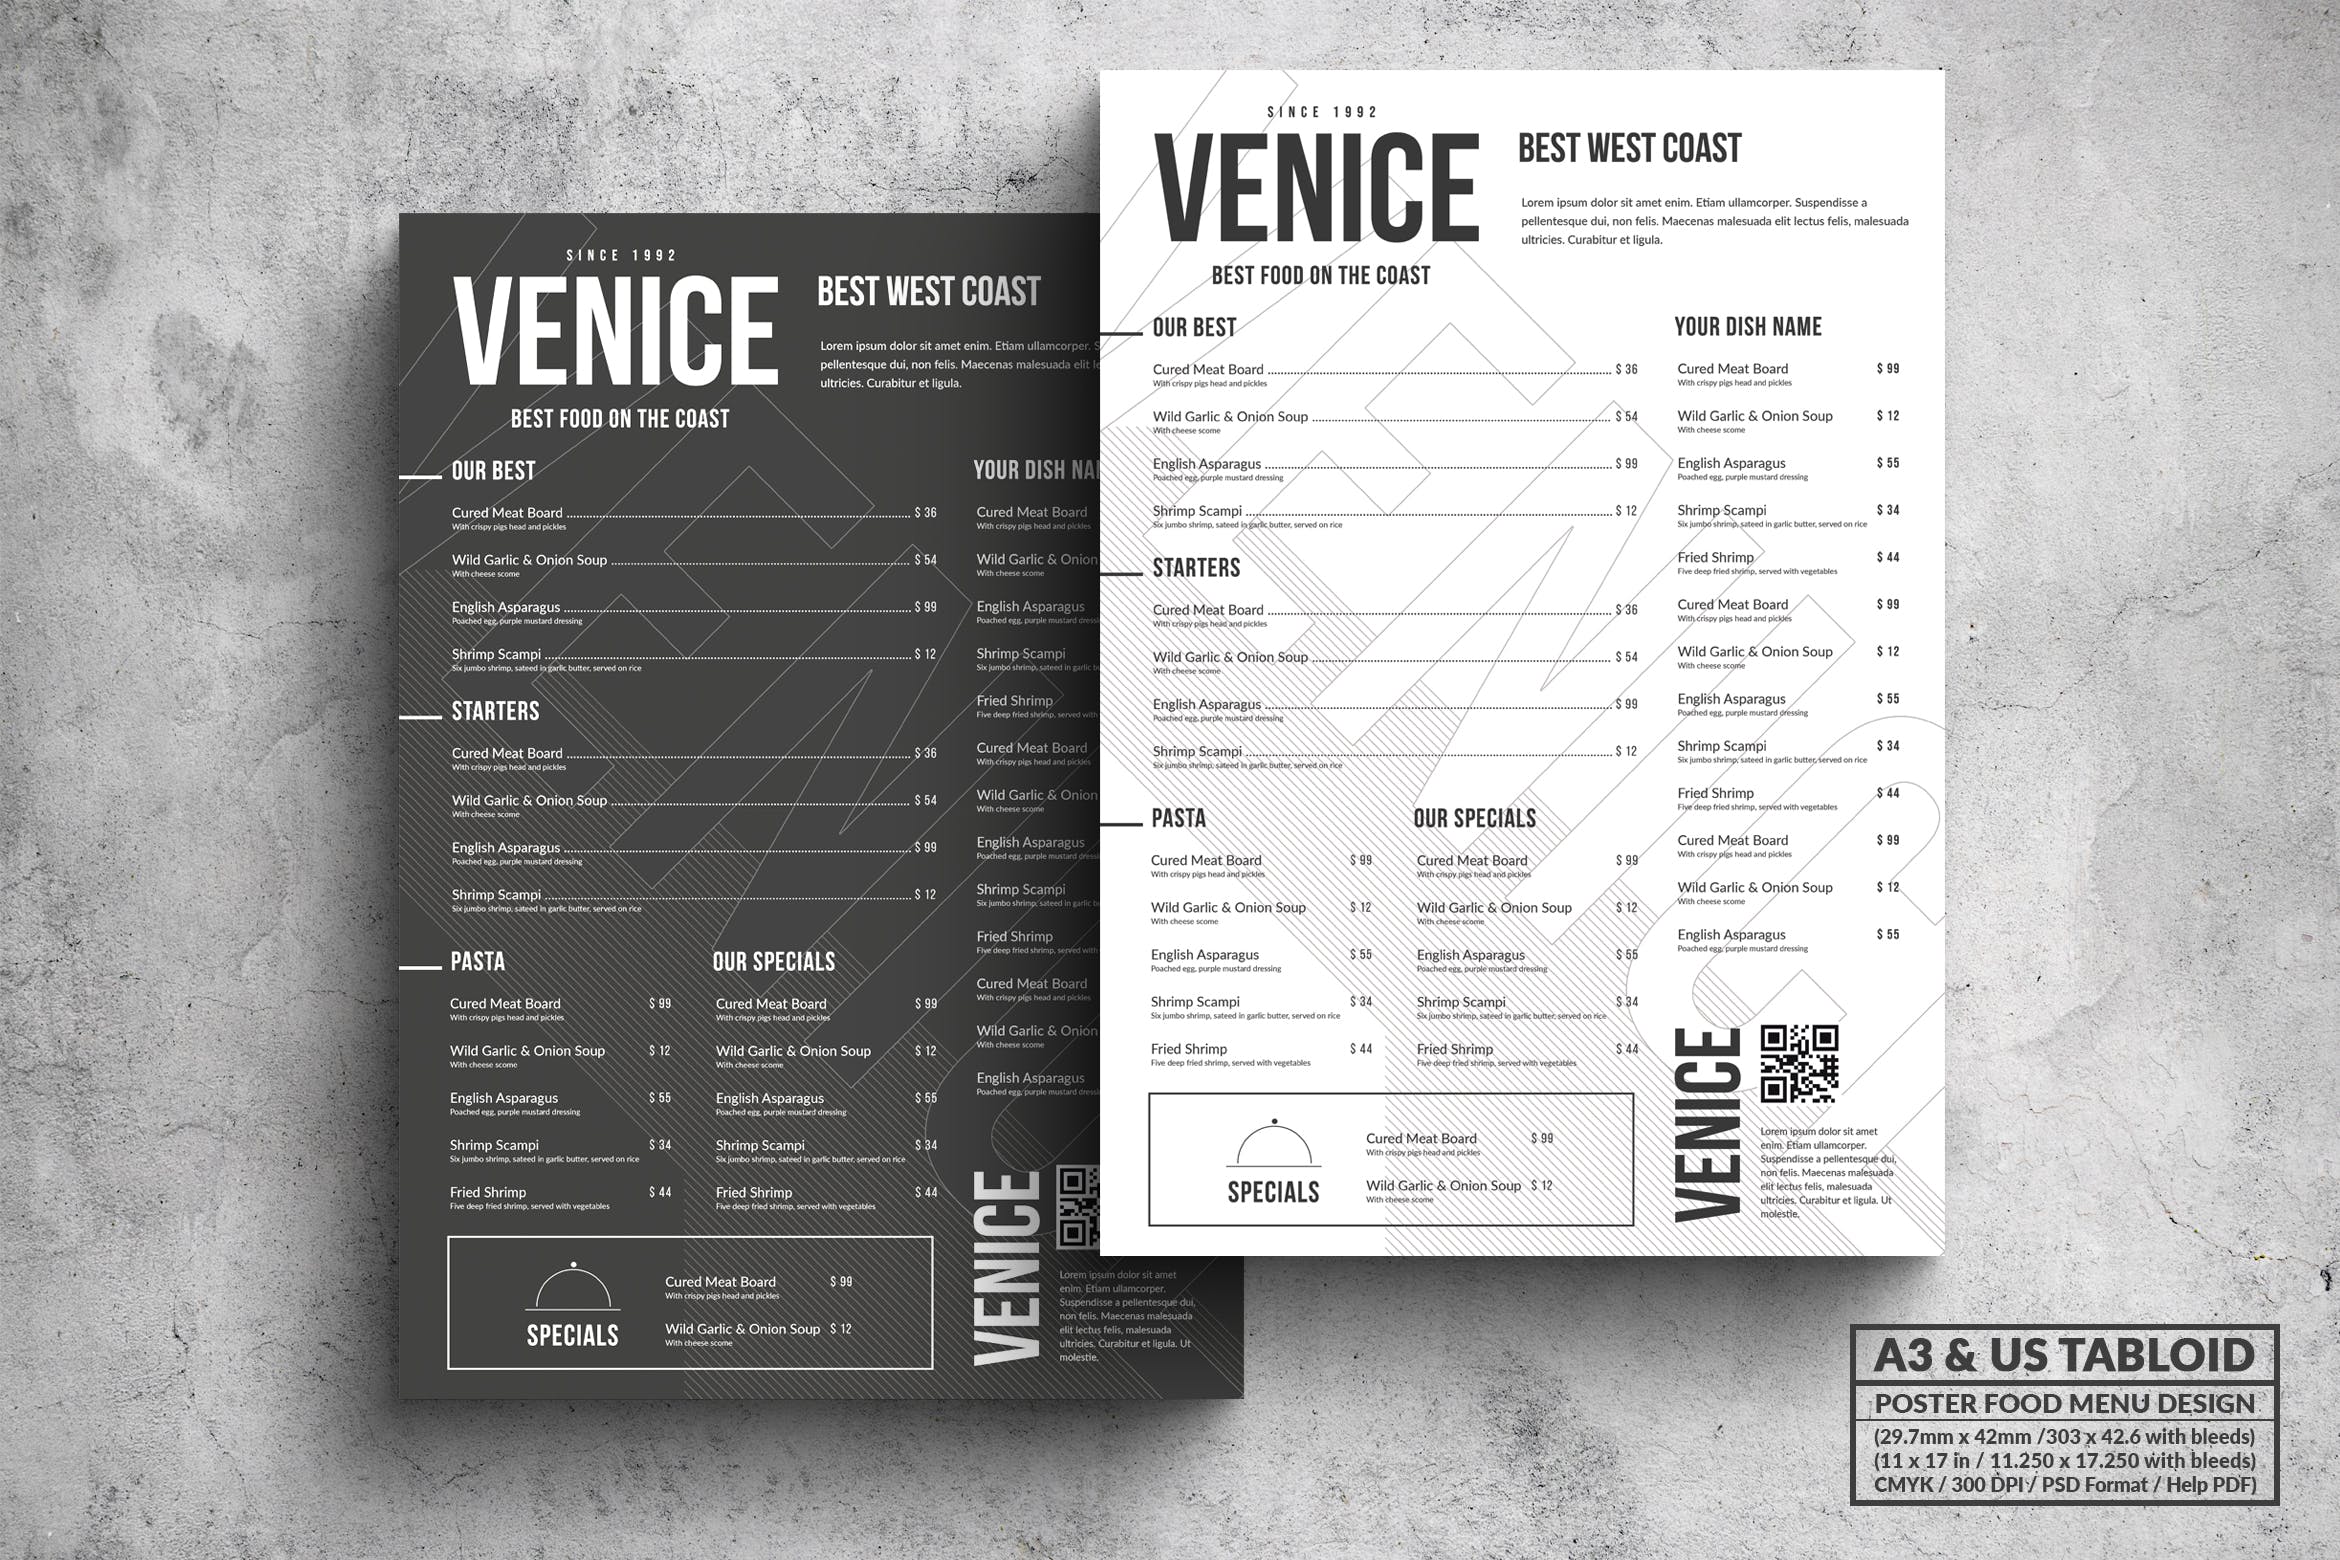 极简设计风格西餐菜单海报PSD素材第一素材精选模板 Venice Minimal Food Menu – A3 & US Tabloid Poster插图